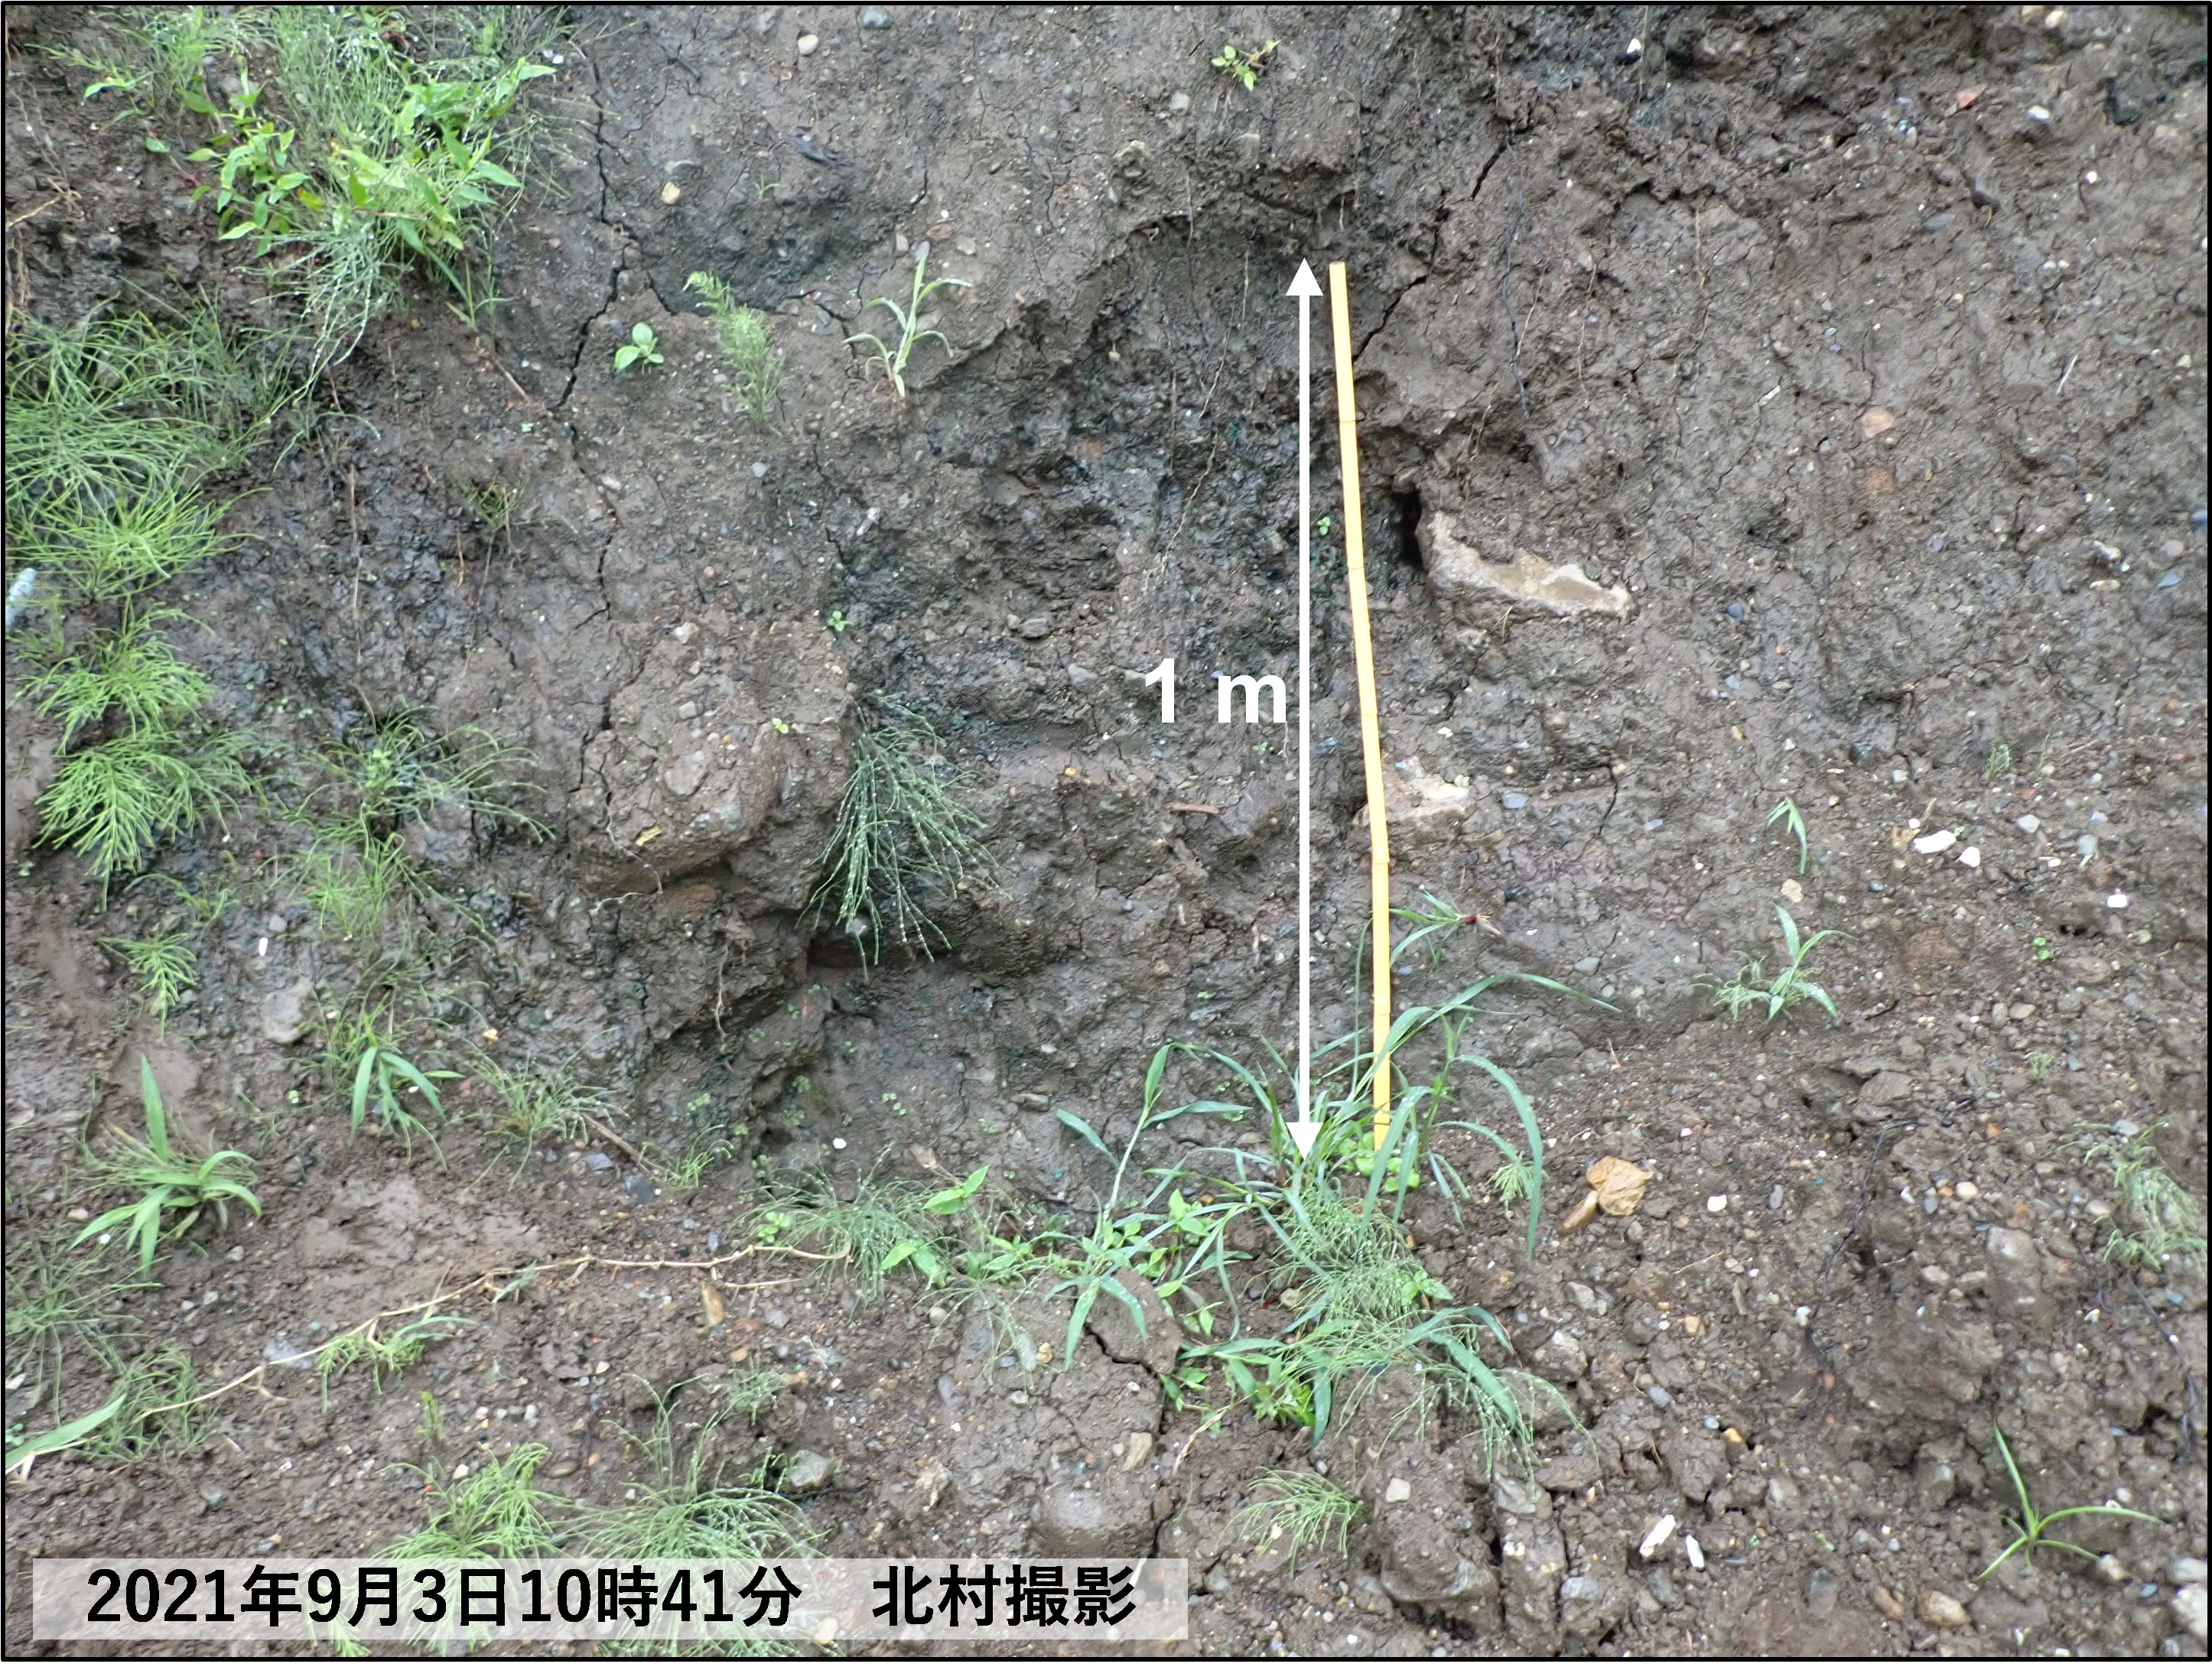 図3　試料採取地点B1の未崩落の盛土の写真．すべて黒色の土砂からなる盛土．の画像